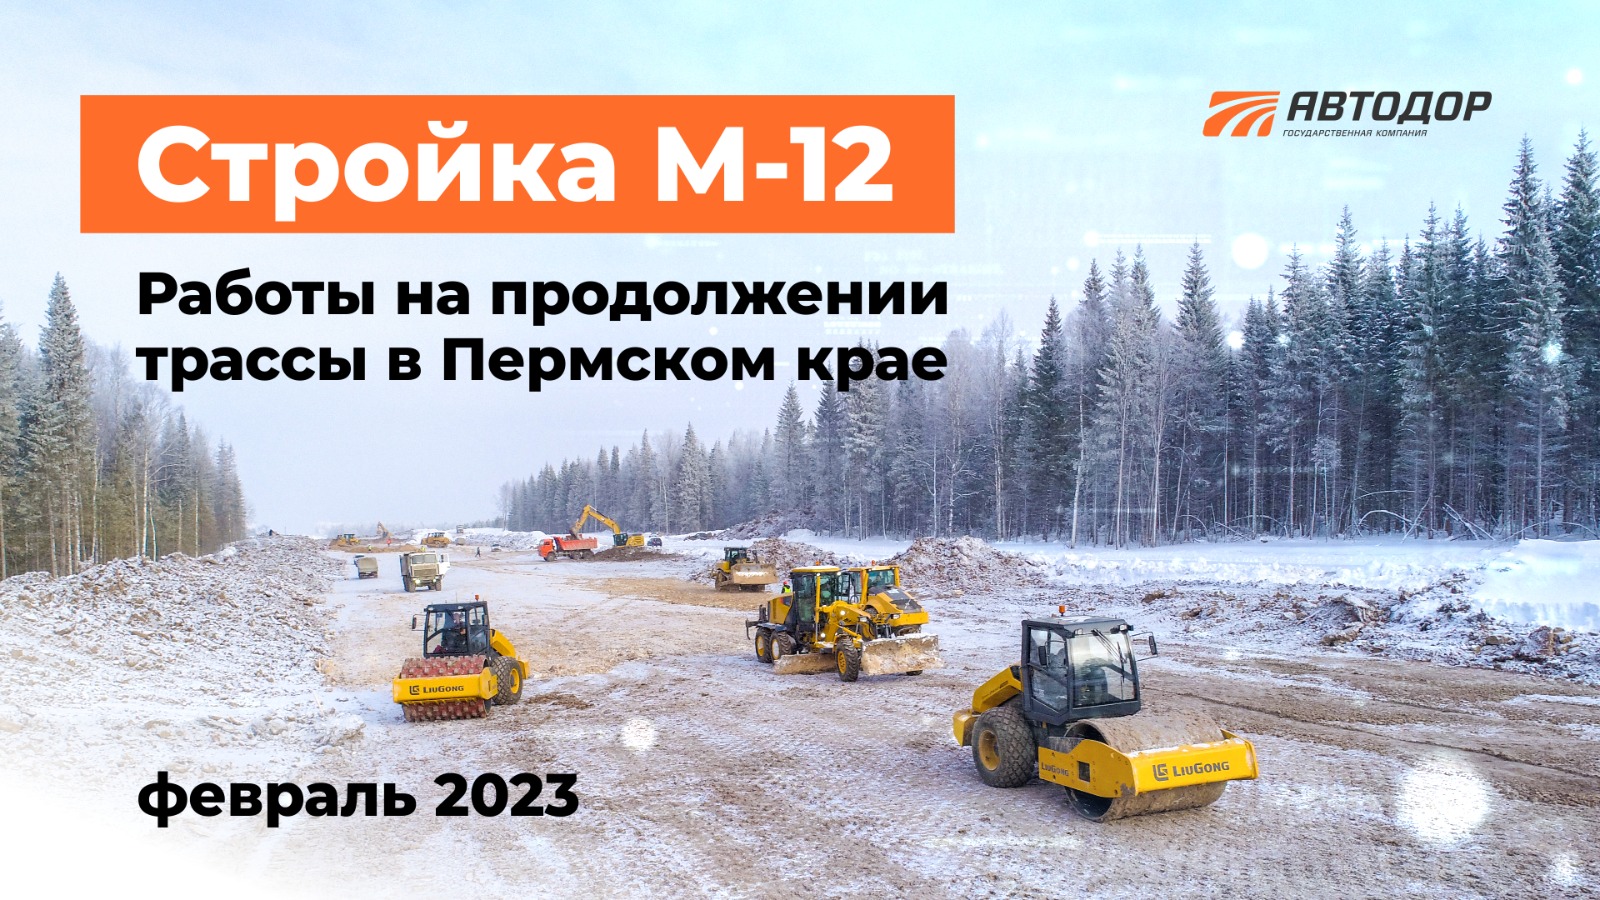 Стройка продолжения трассы М-12 в Пермском крае